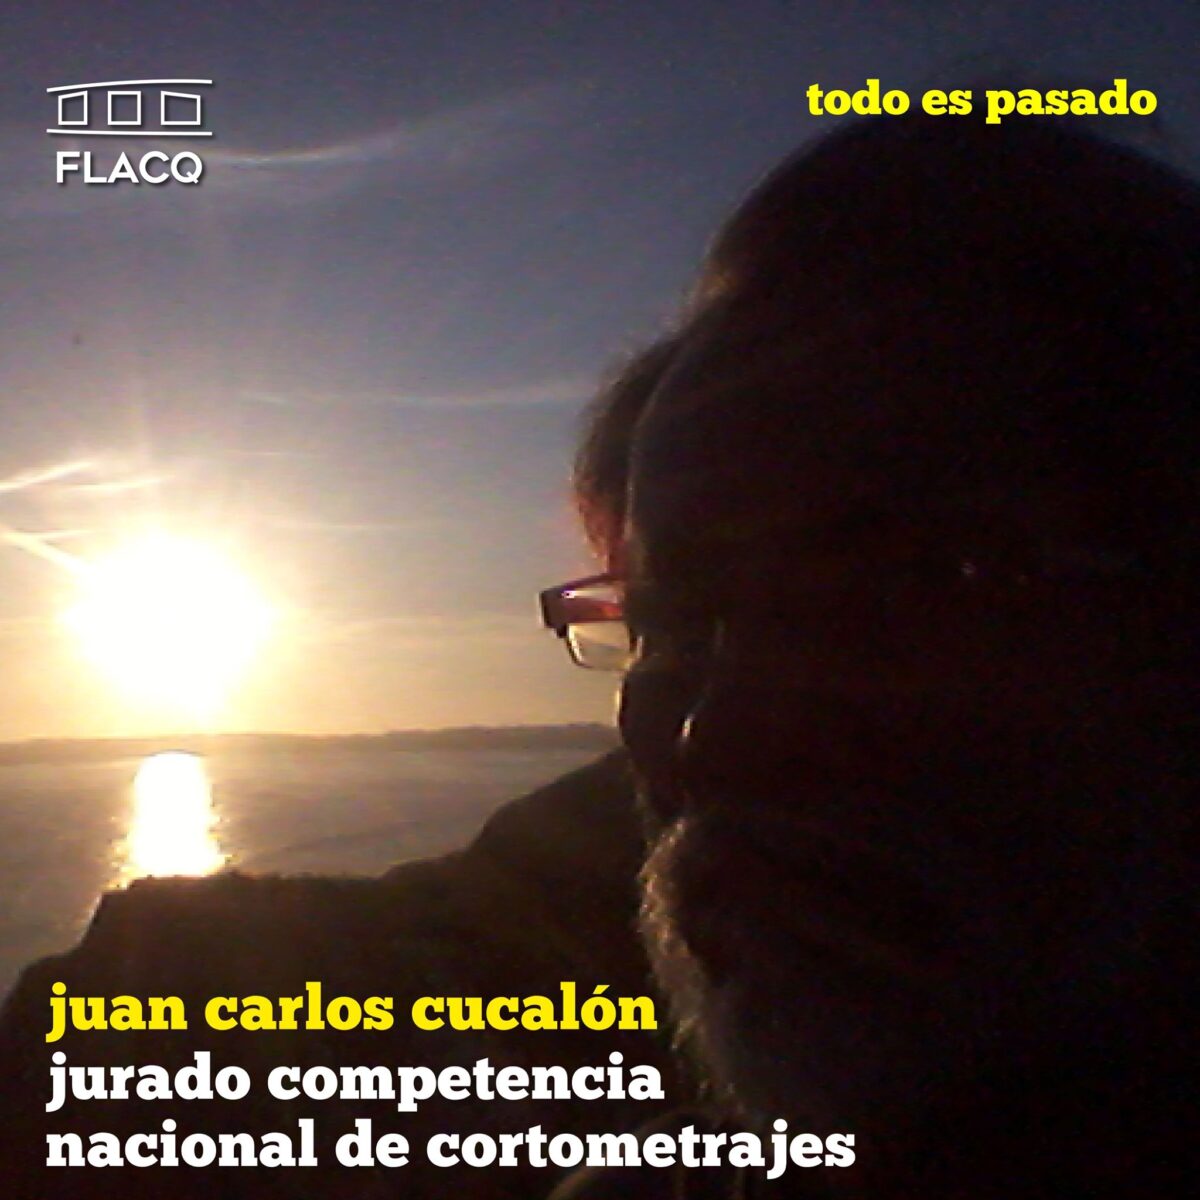 Juan Carlos Cucalón, jurado del concurso nacional de cortometrajes del FLACQ